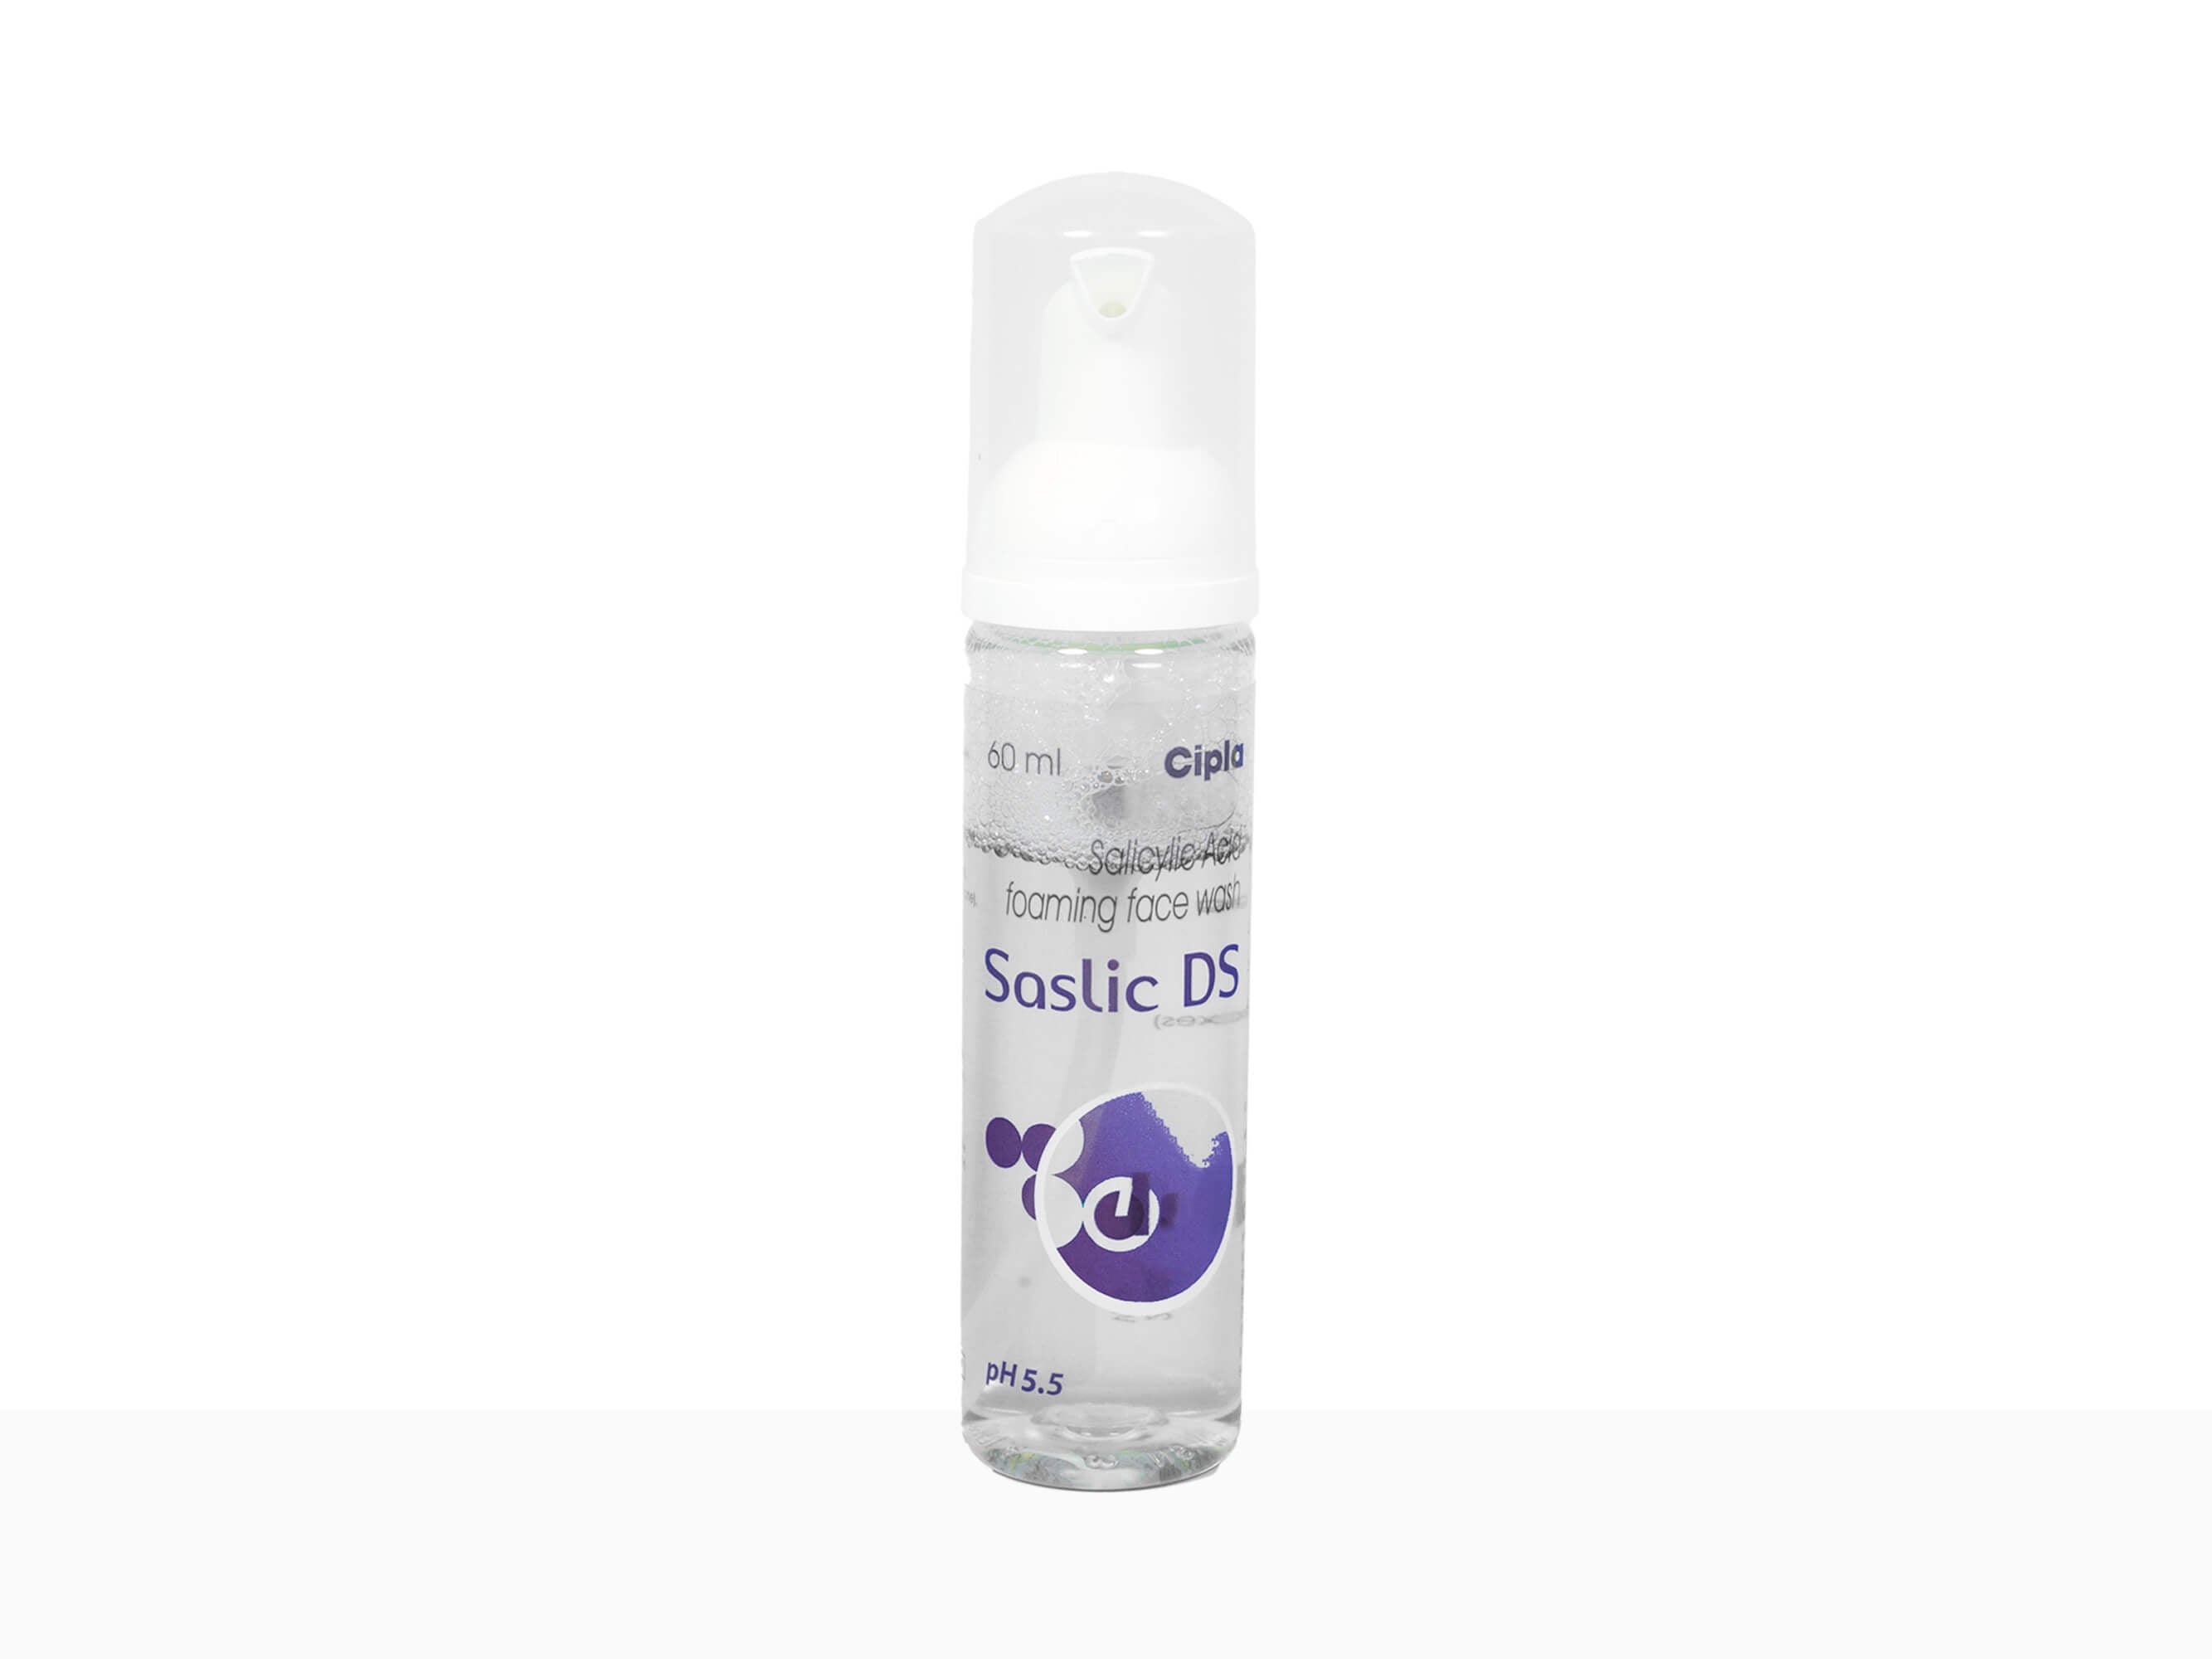 Saslic DS Foaming Face Wash - Clinikally